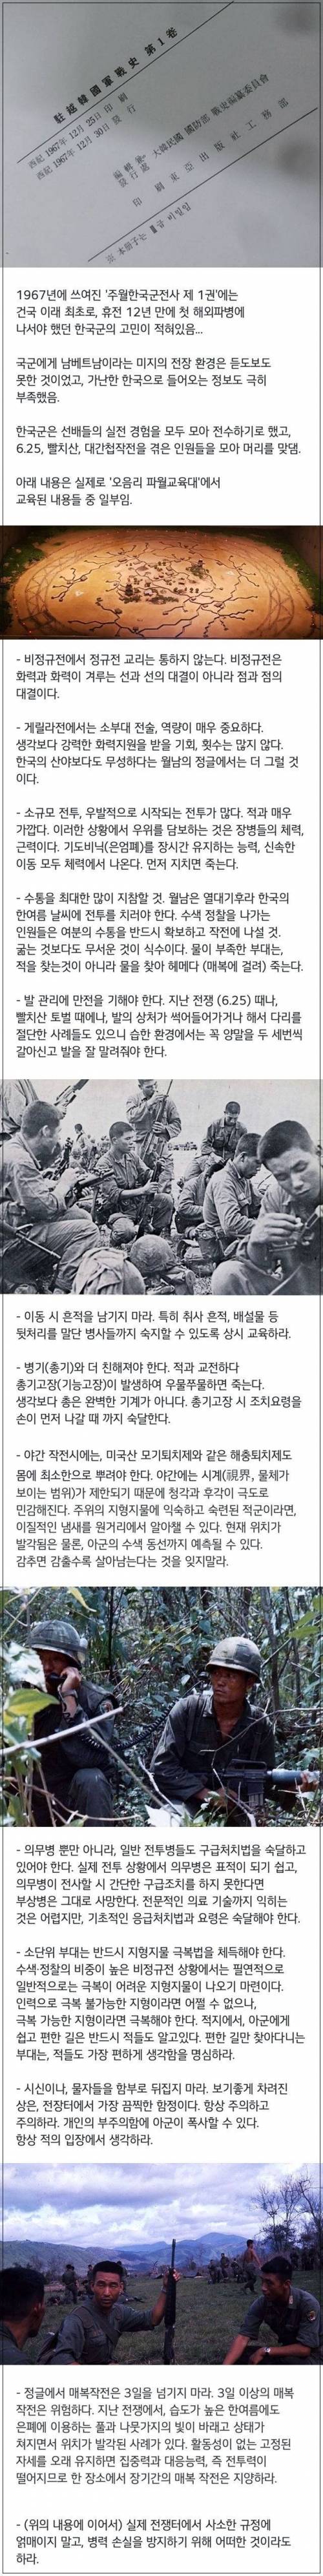 한국군 첫 베트남 파병 당시 교육 내용